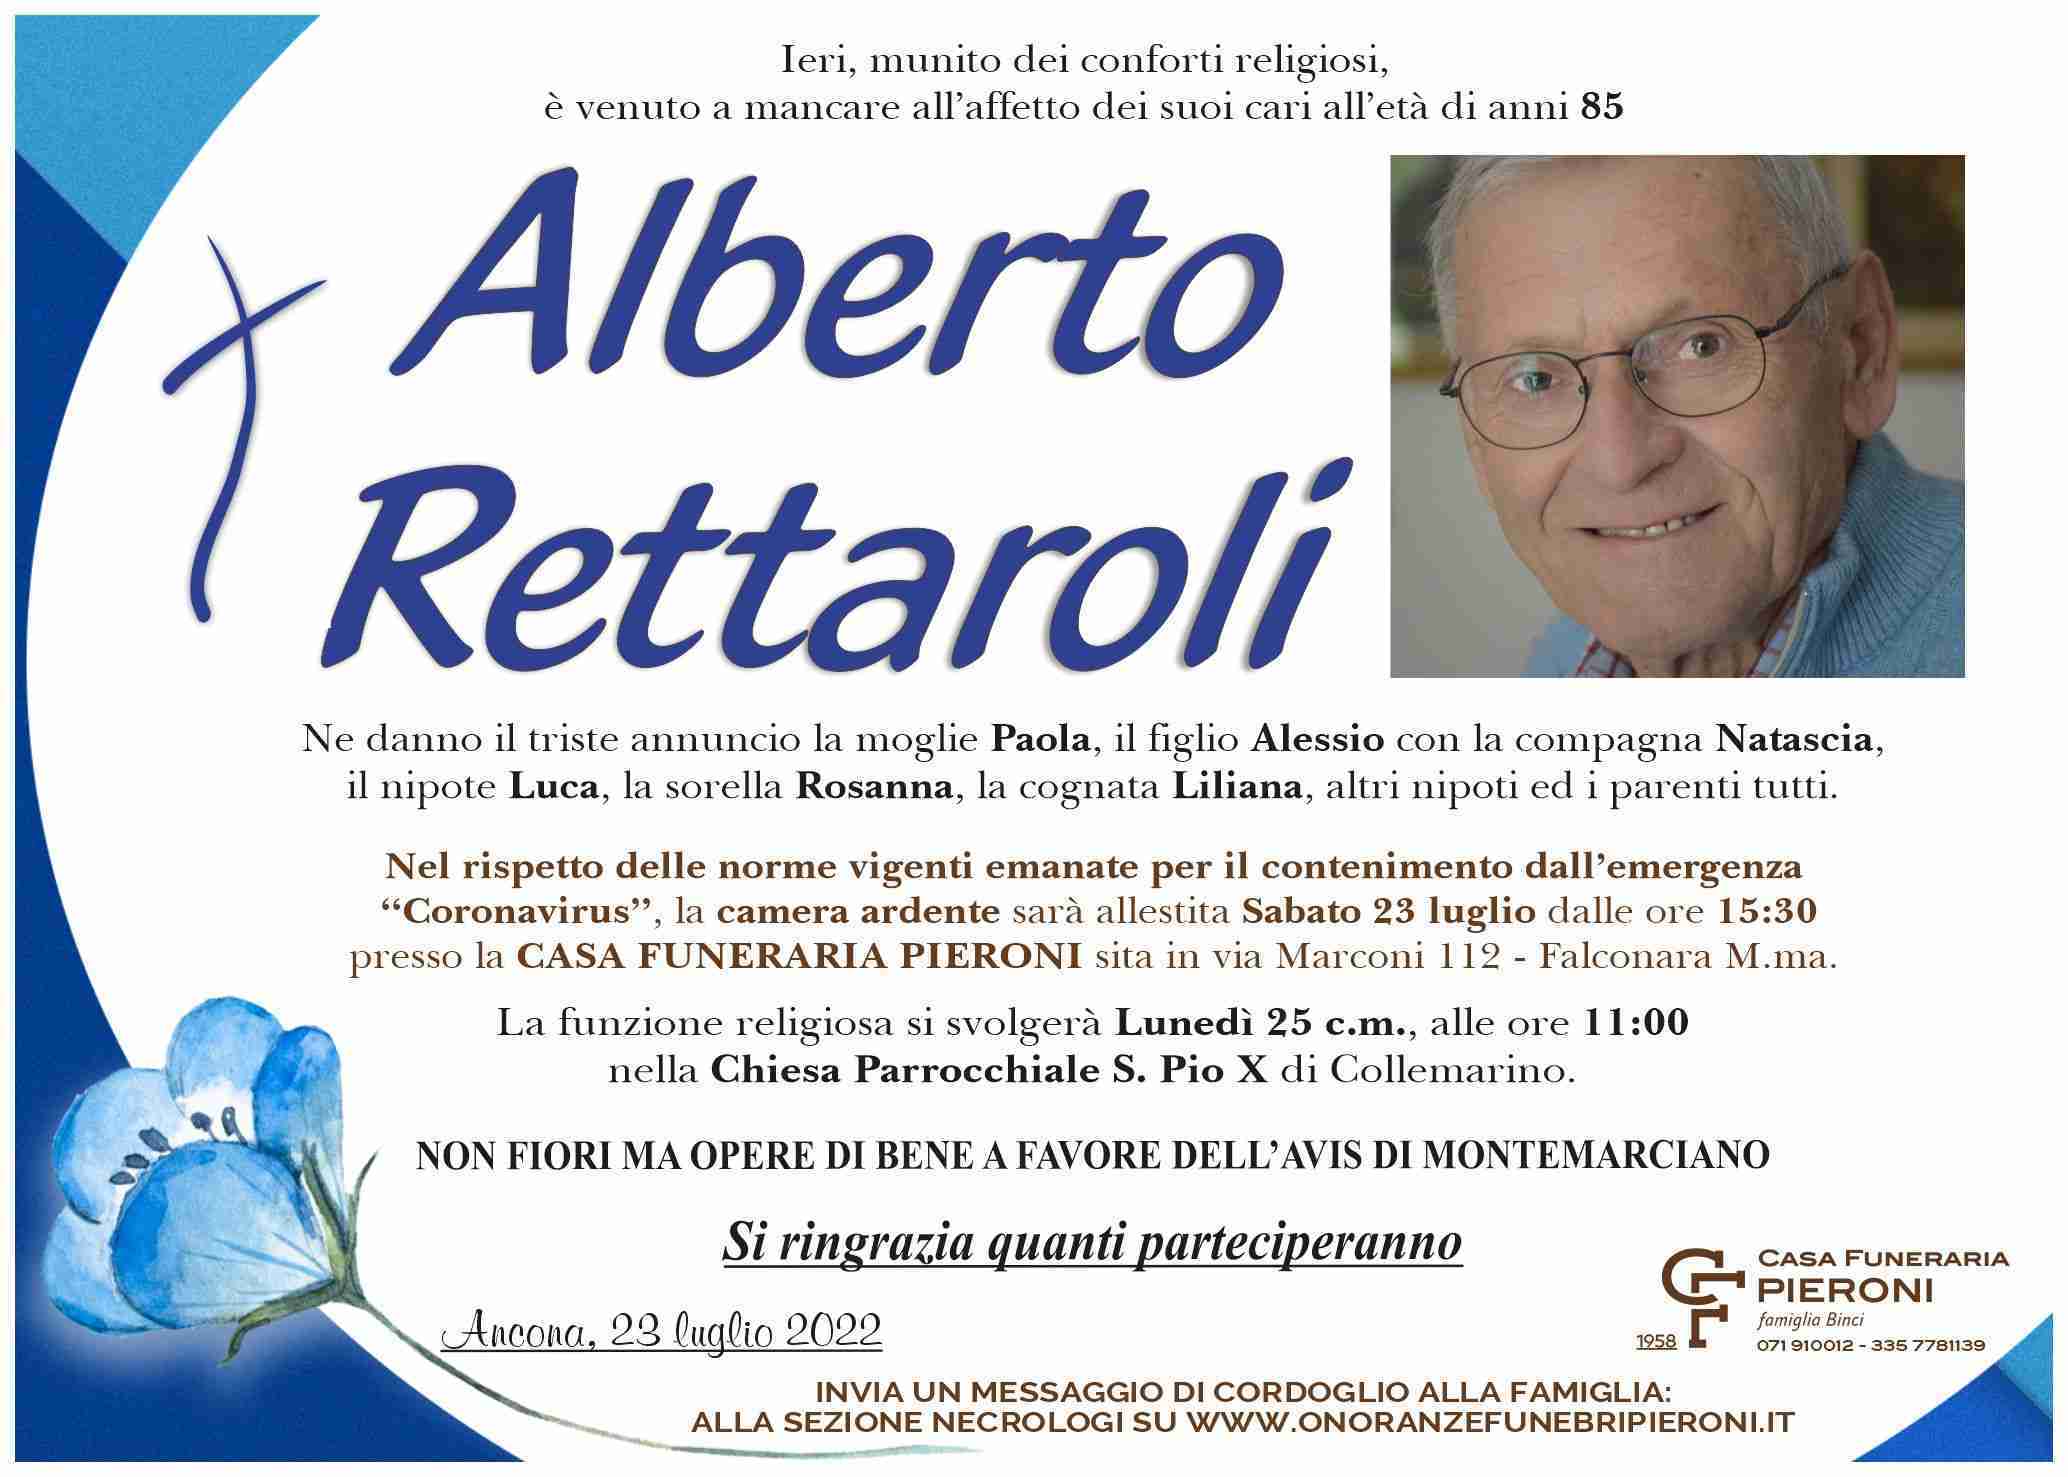 Alberto Rettaroli